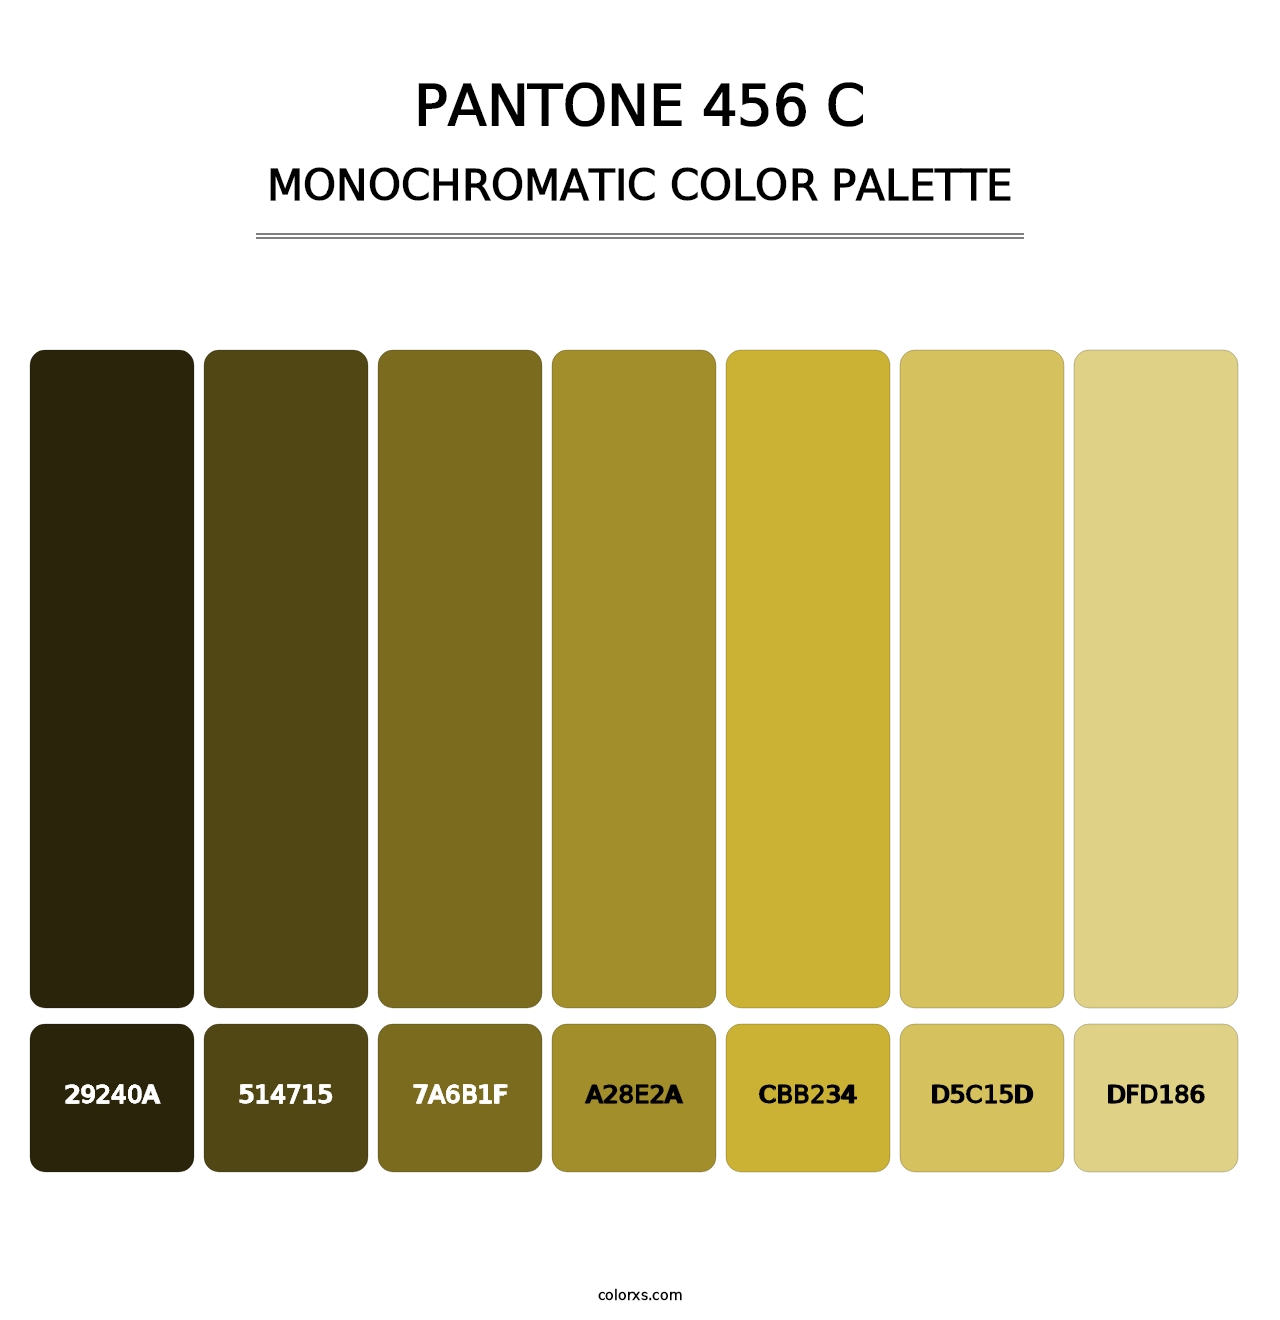 PANTONE 456 C - Monochromatic Color Palette